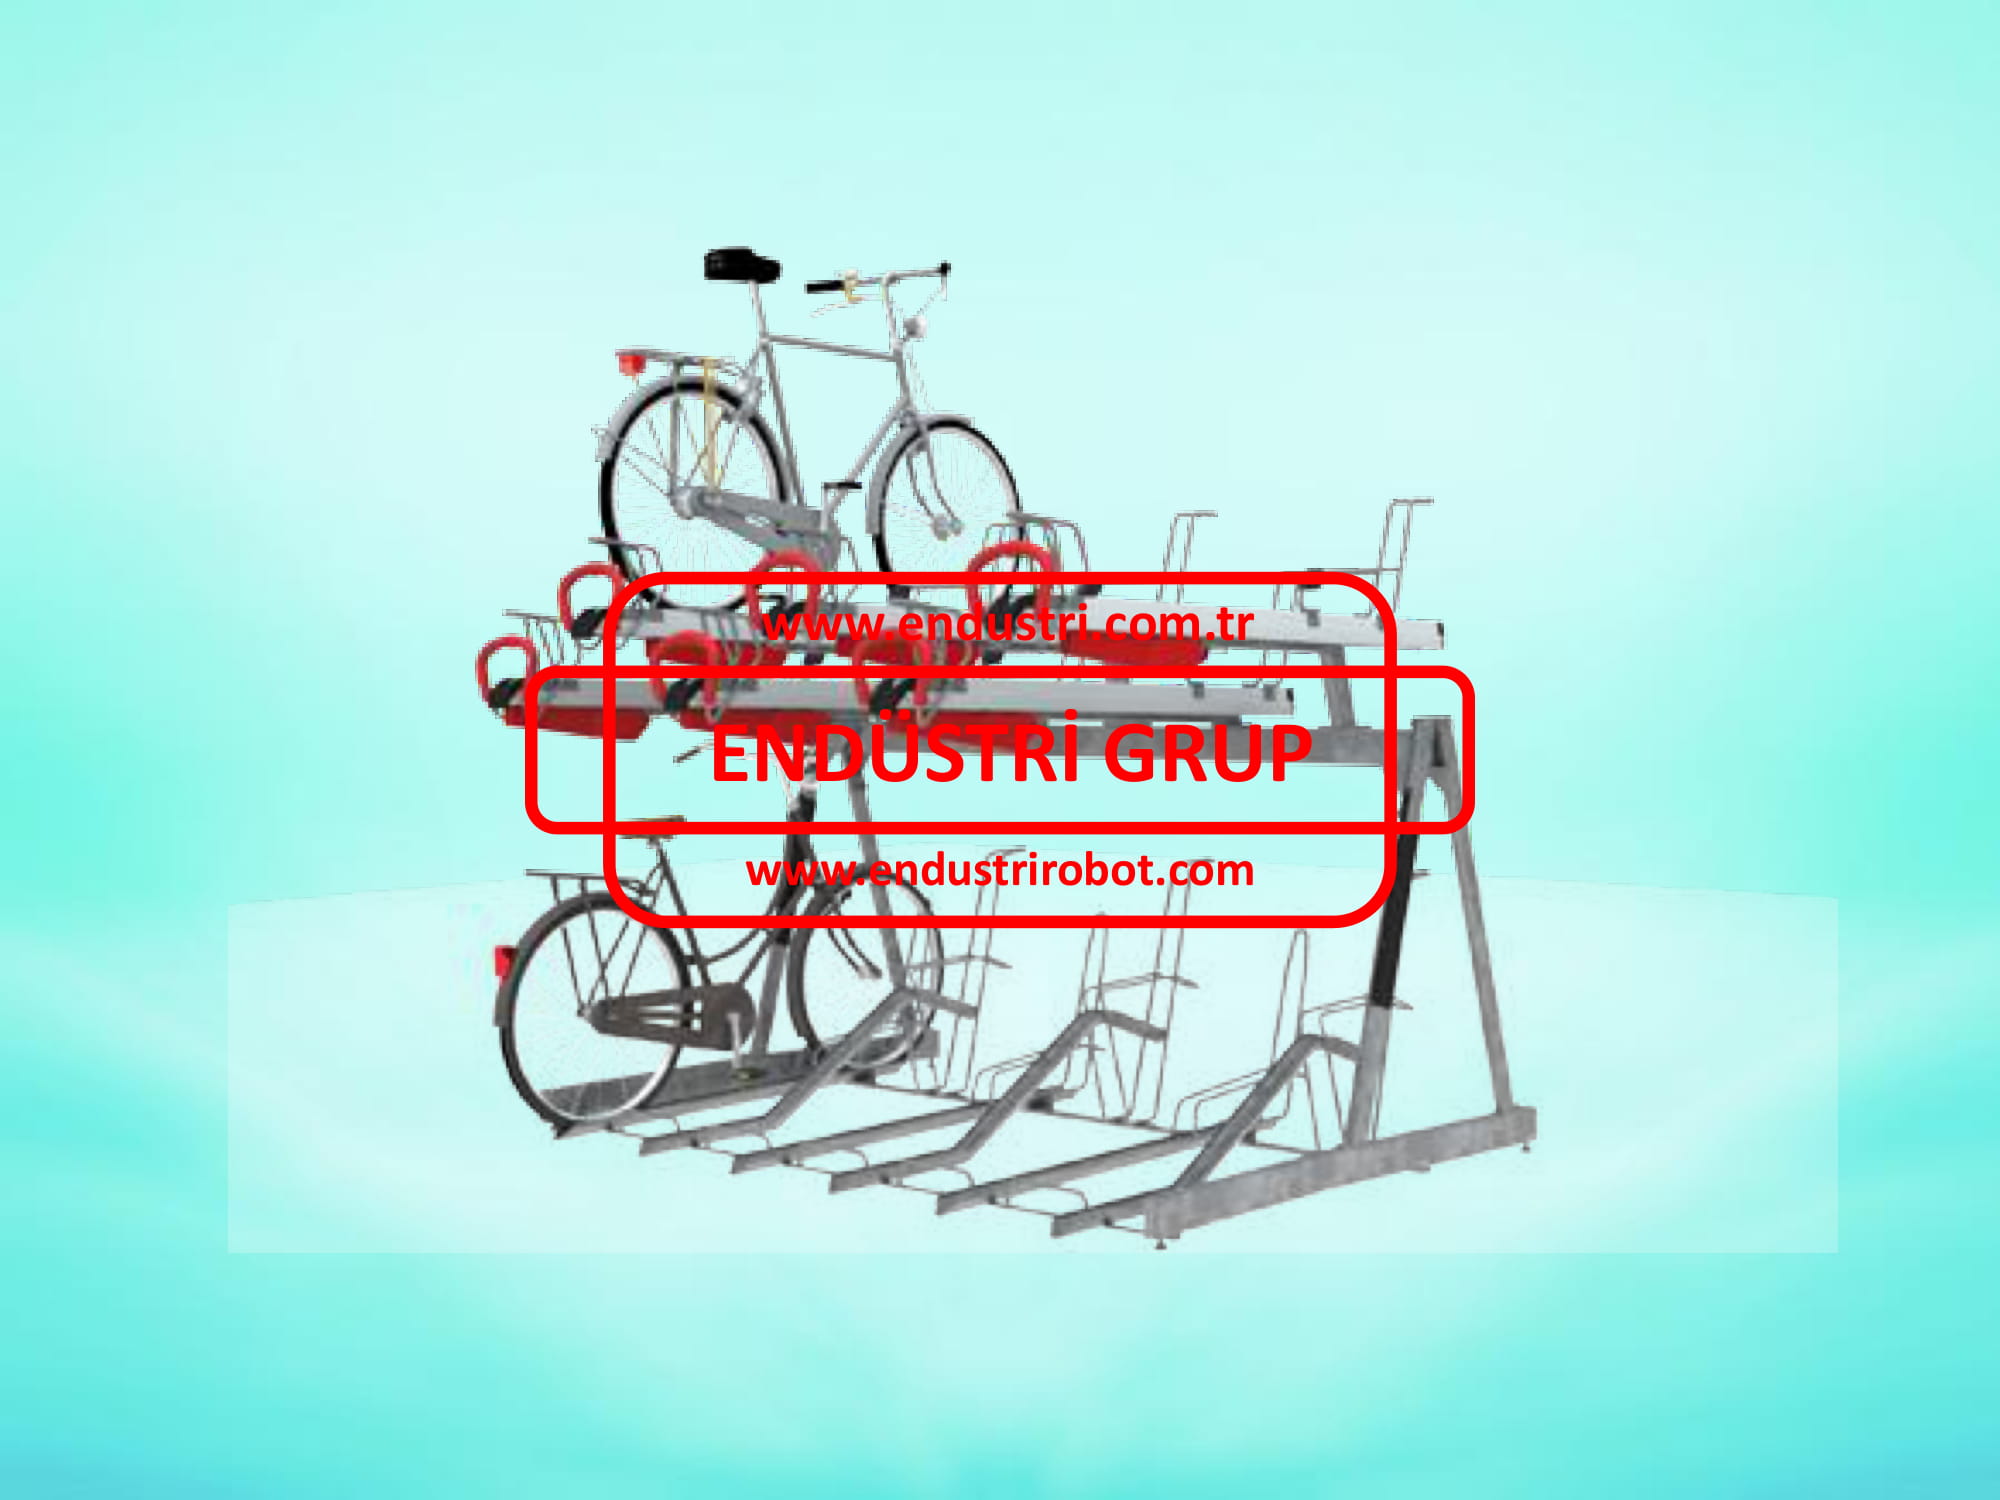 bisiklet-parki-demiri-aparati-duragi-imalati-olculeri-ureticileri-modelleri